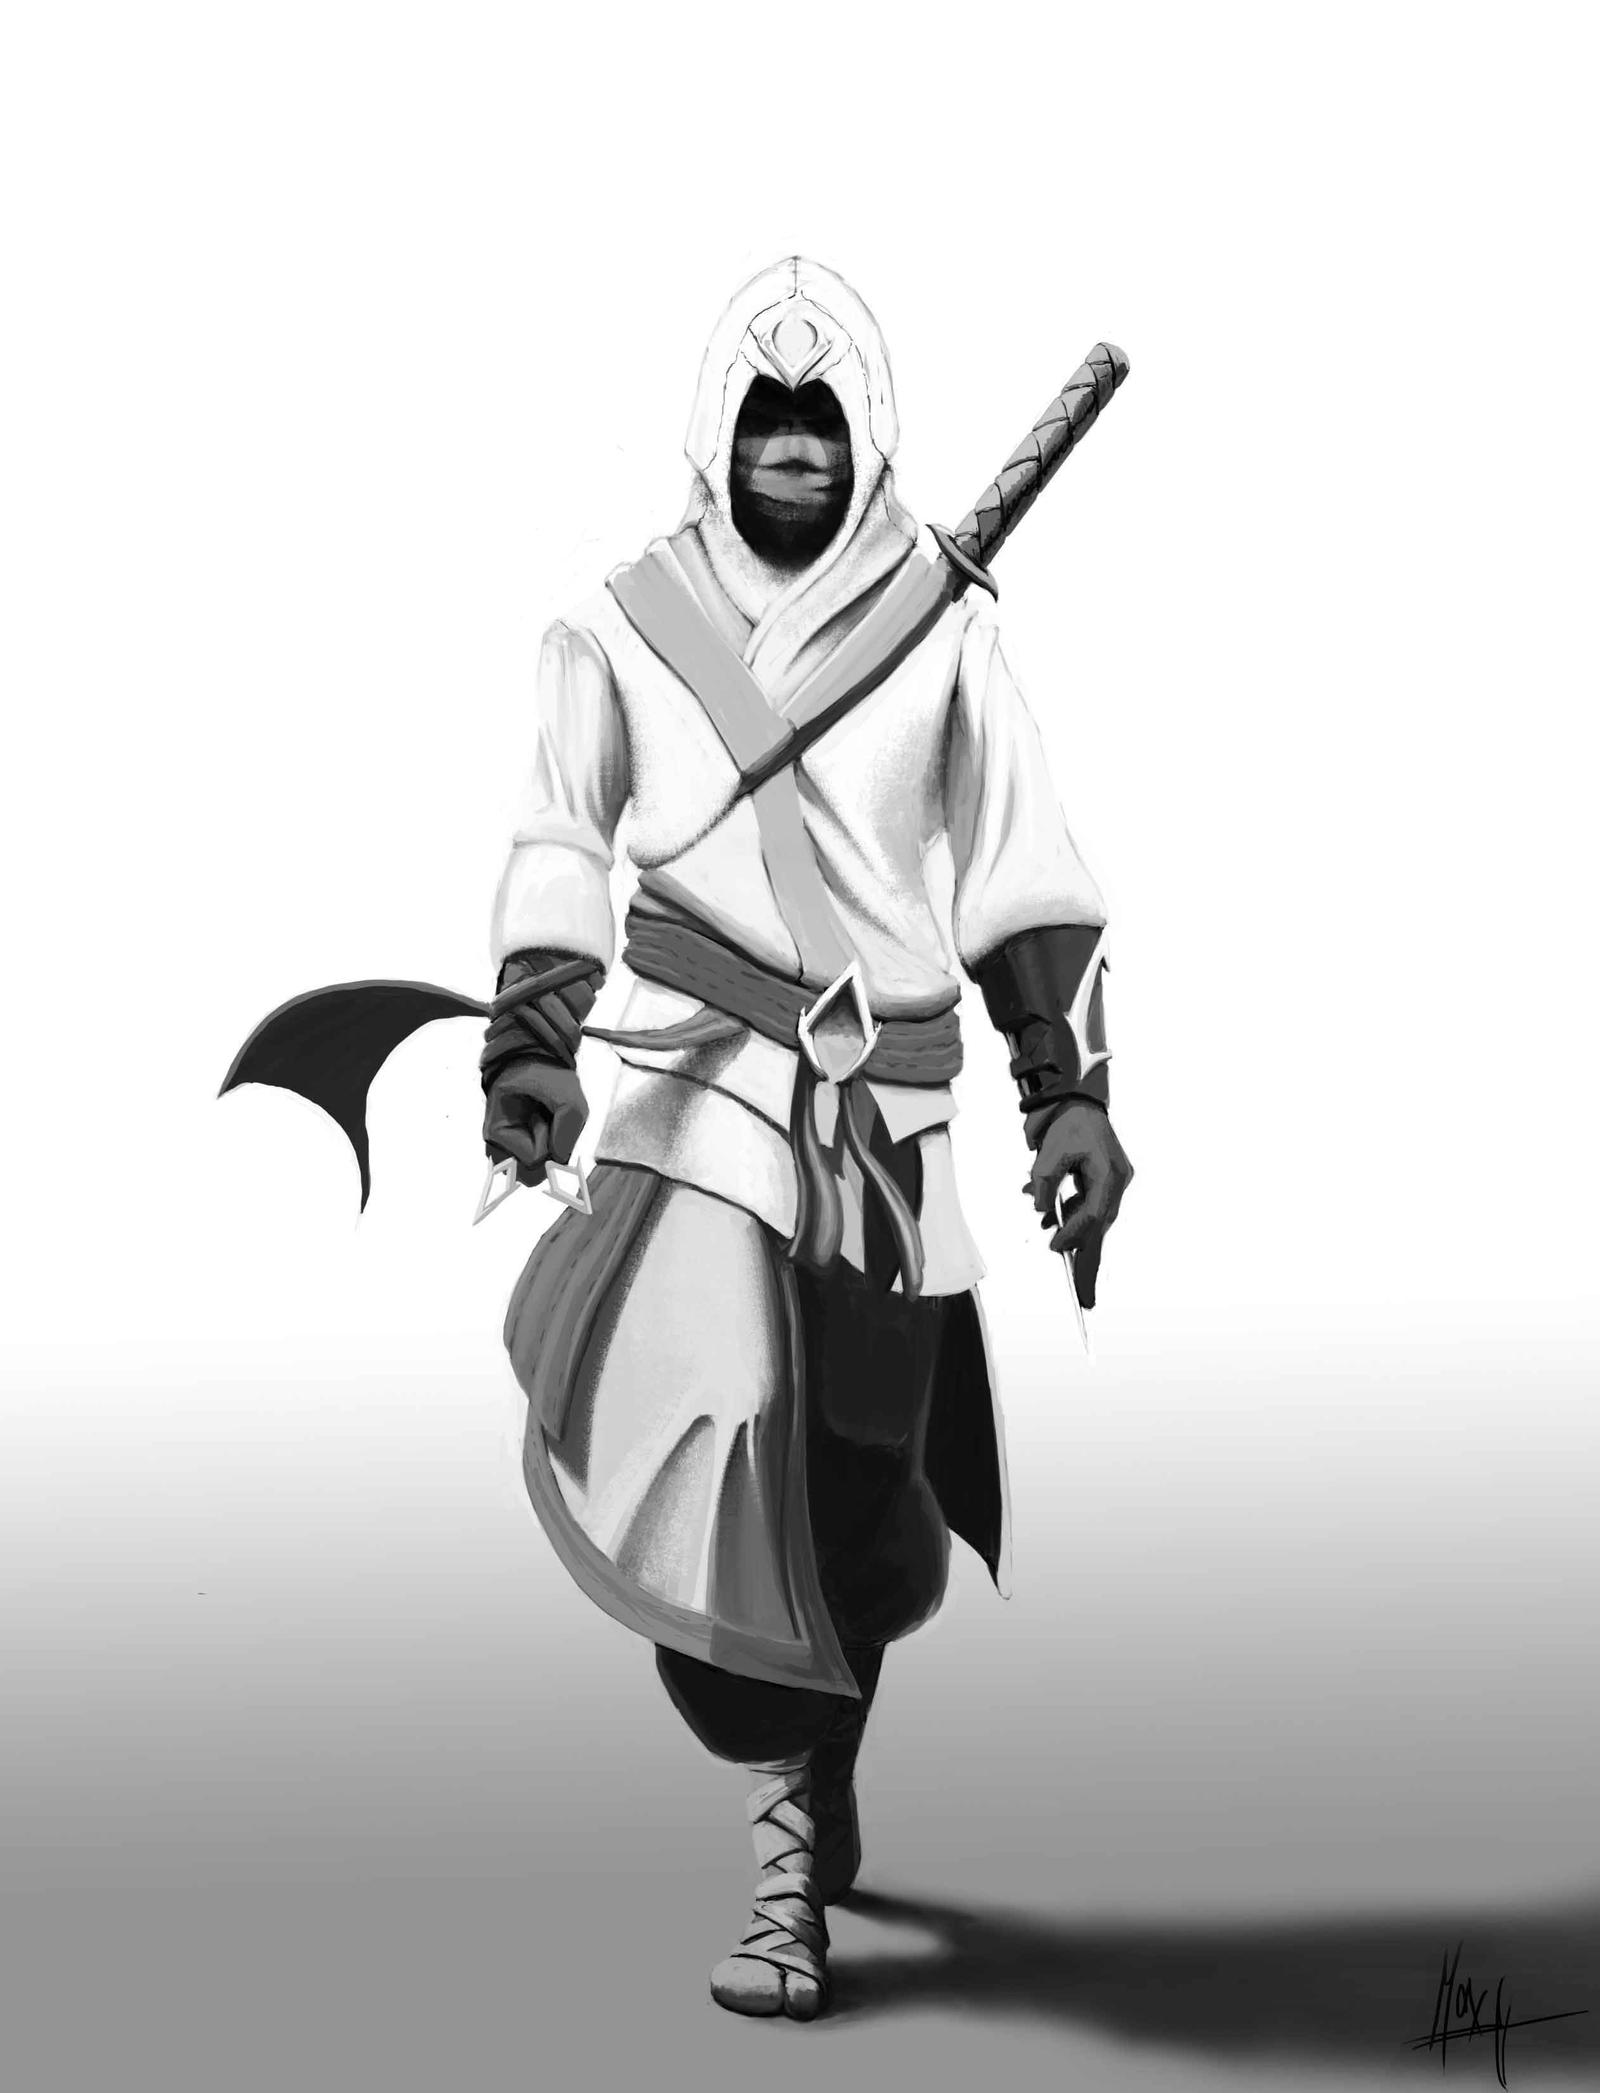 Ninja Assassin by Zubair273 on DeviantArt